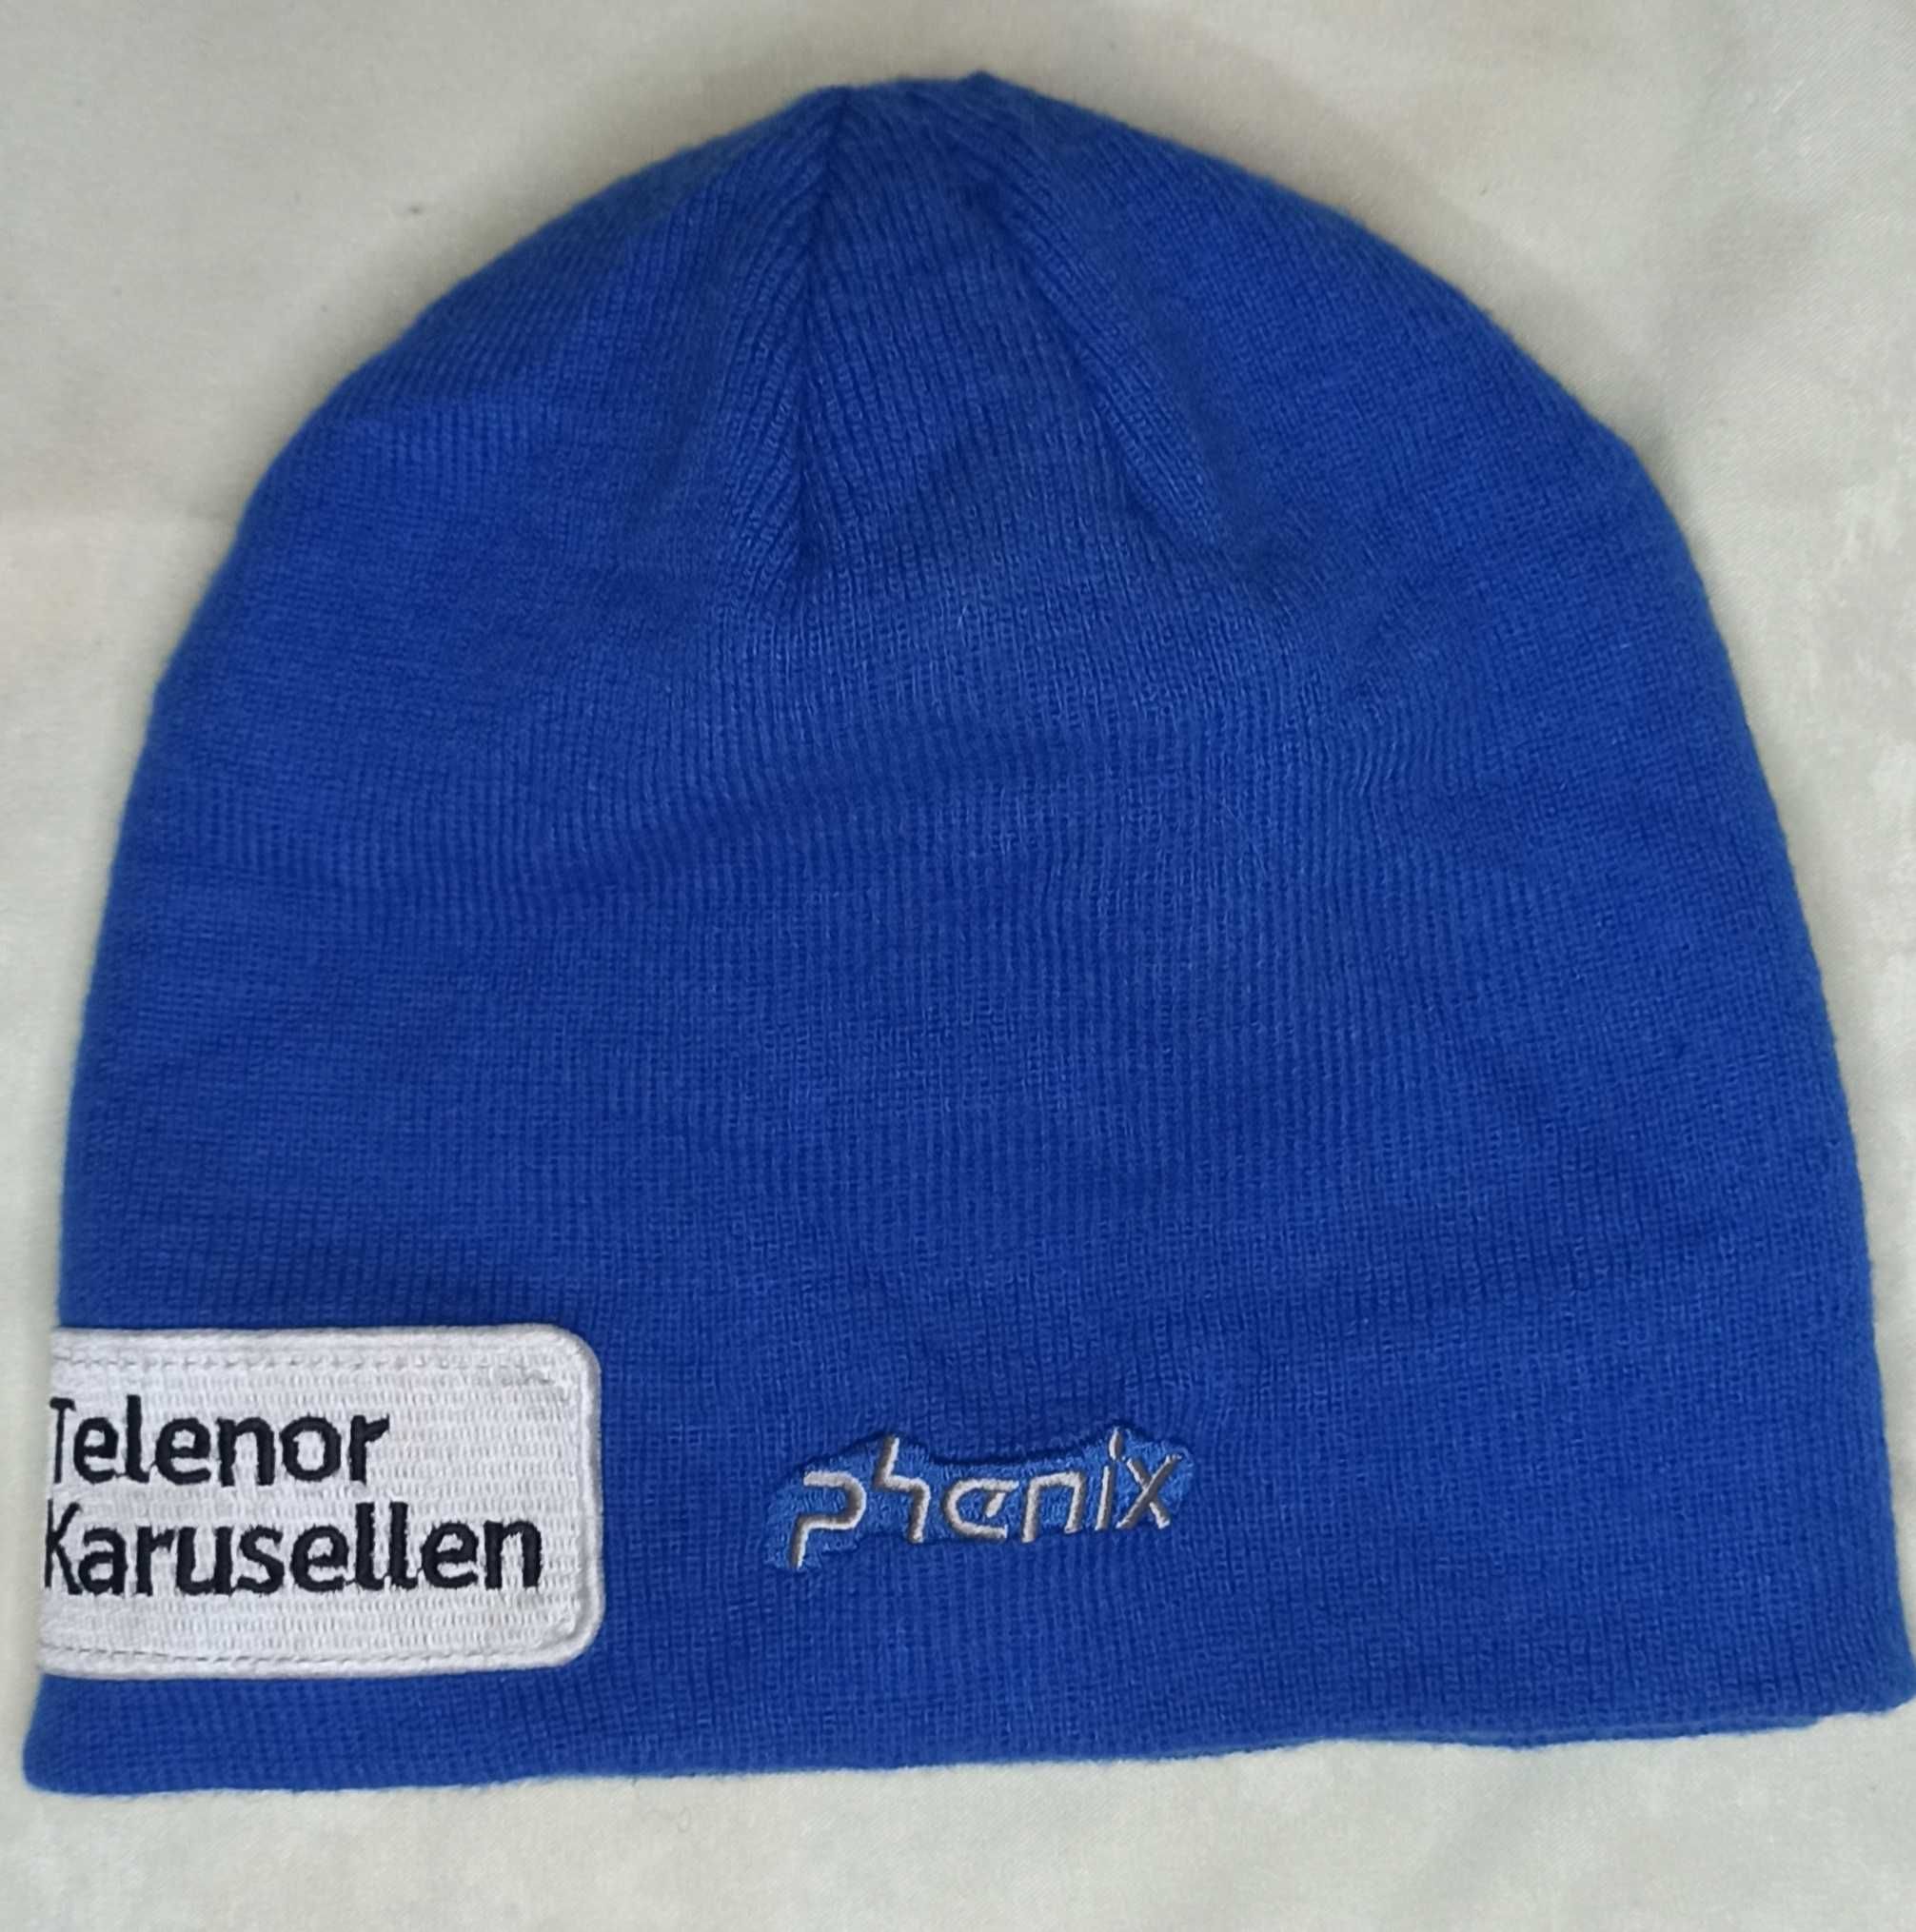 PHENIX,лыжная синяя шапка-бини,зимняя сноубордическая